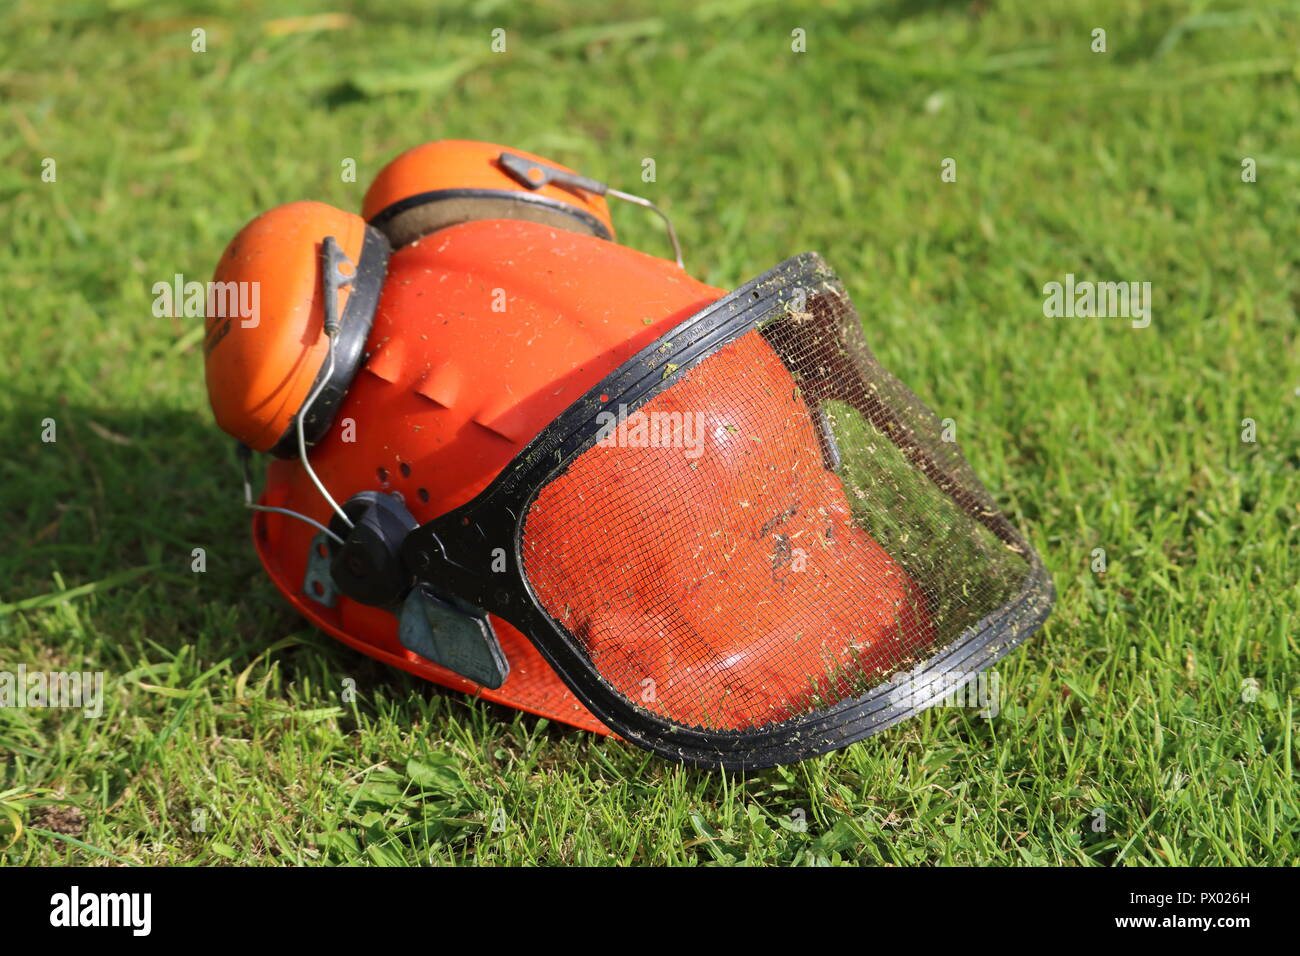 Casque de sécurité Orange chapeau avec oreilles, protecteurs, mesh visor, herbe coupée arrière-plan. Utilisé pour strimming, jardinage, l'herbe sur casque, côté droit Banque D'Images